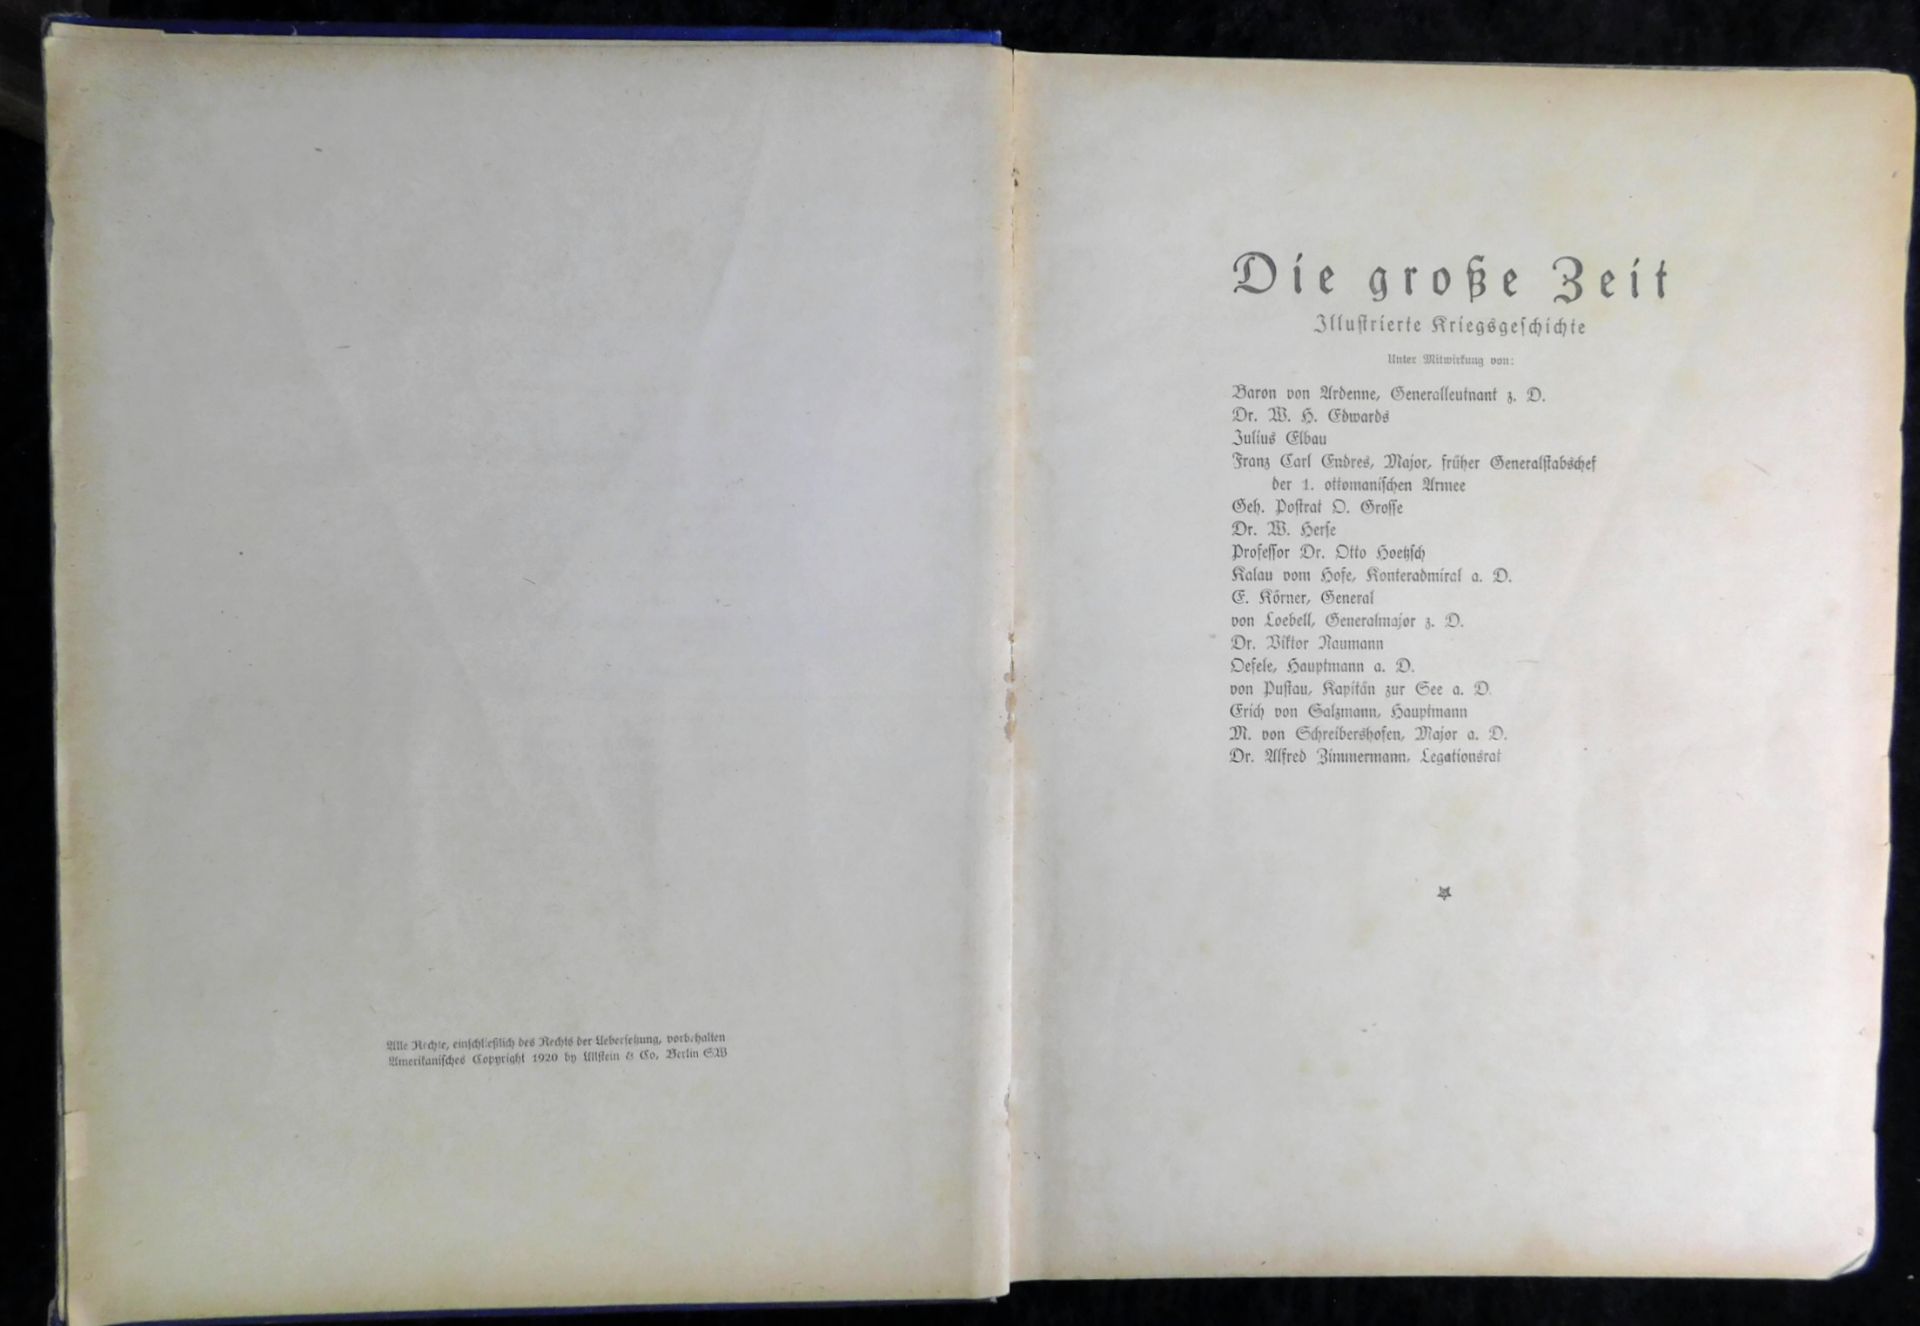 Die große Zeit - Illustrierte Kriegsgeschichte, 2 Bände, Ullstein & Co, 1915 u.1920 - Image 3 of 6